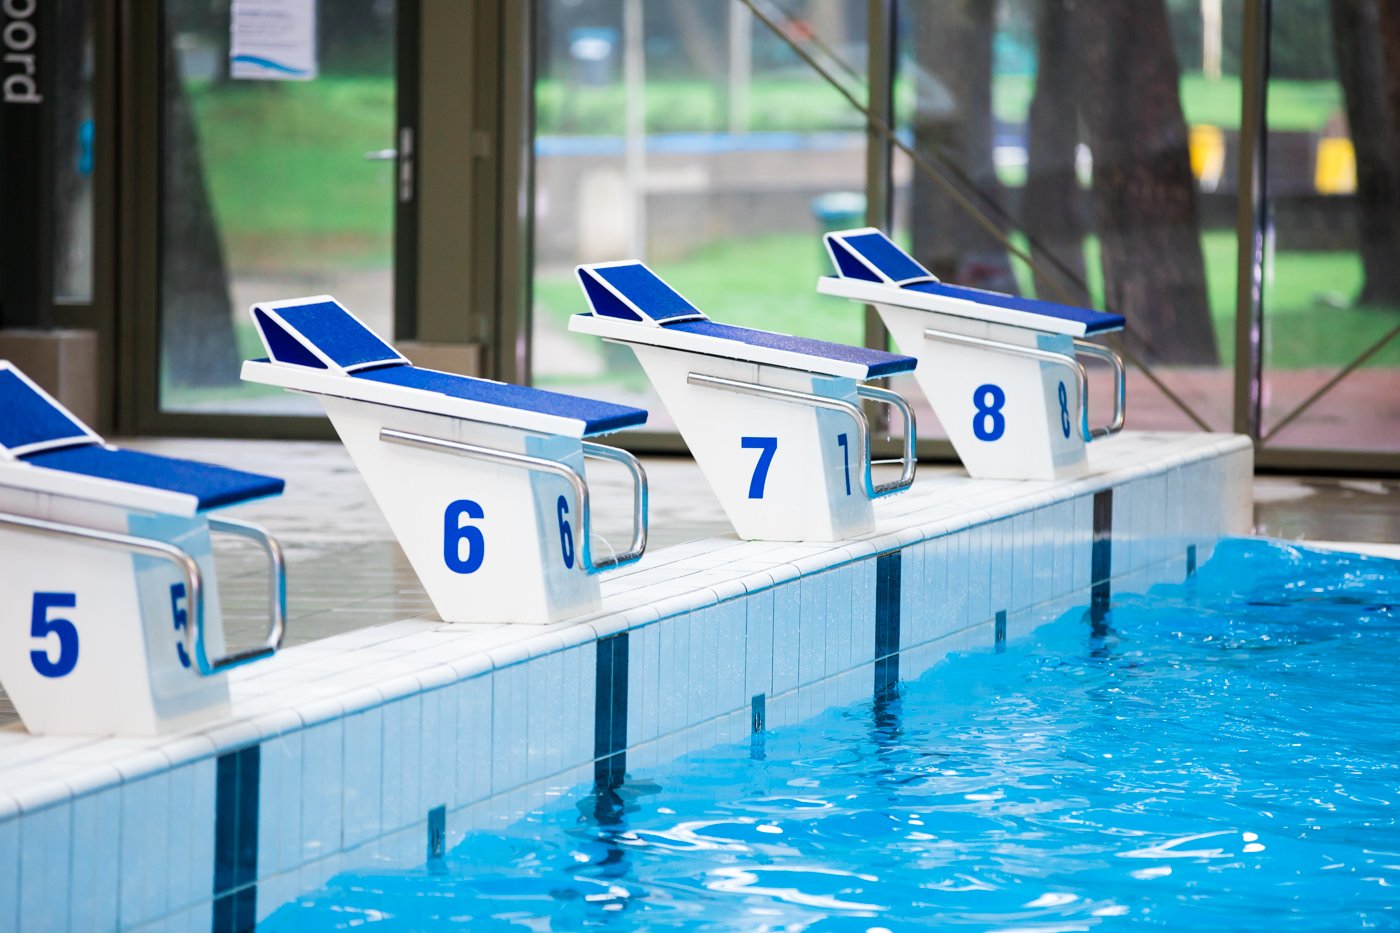 Gevolgen uitspraak rechter zwemonderwijs Hilversum nog onduidelijk